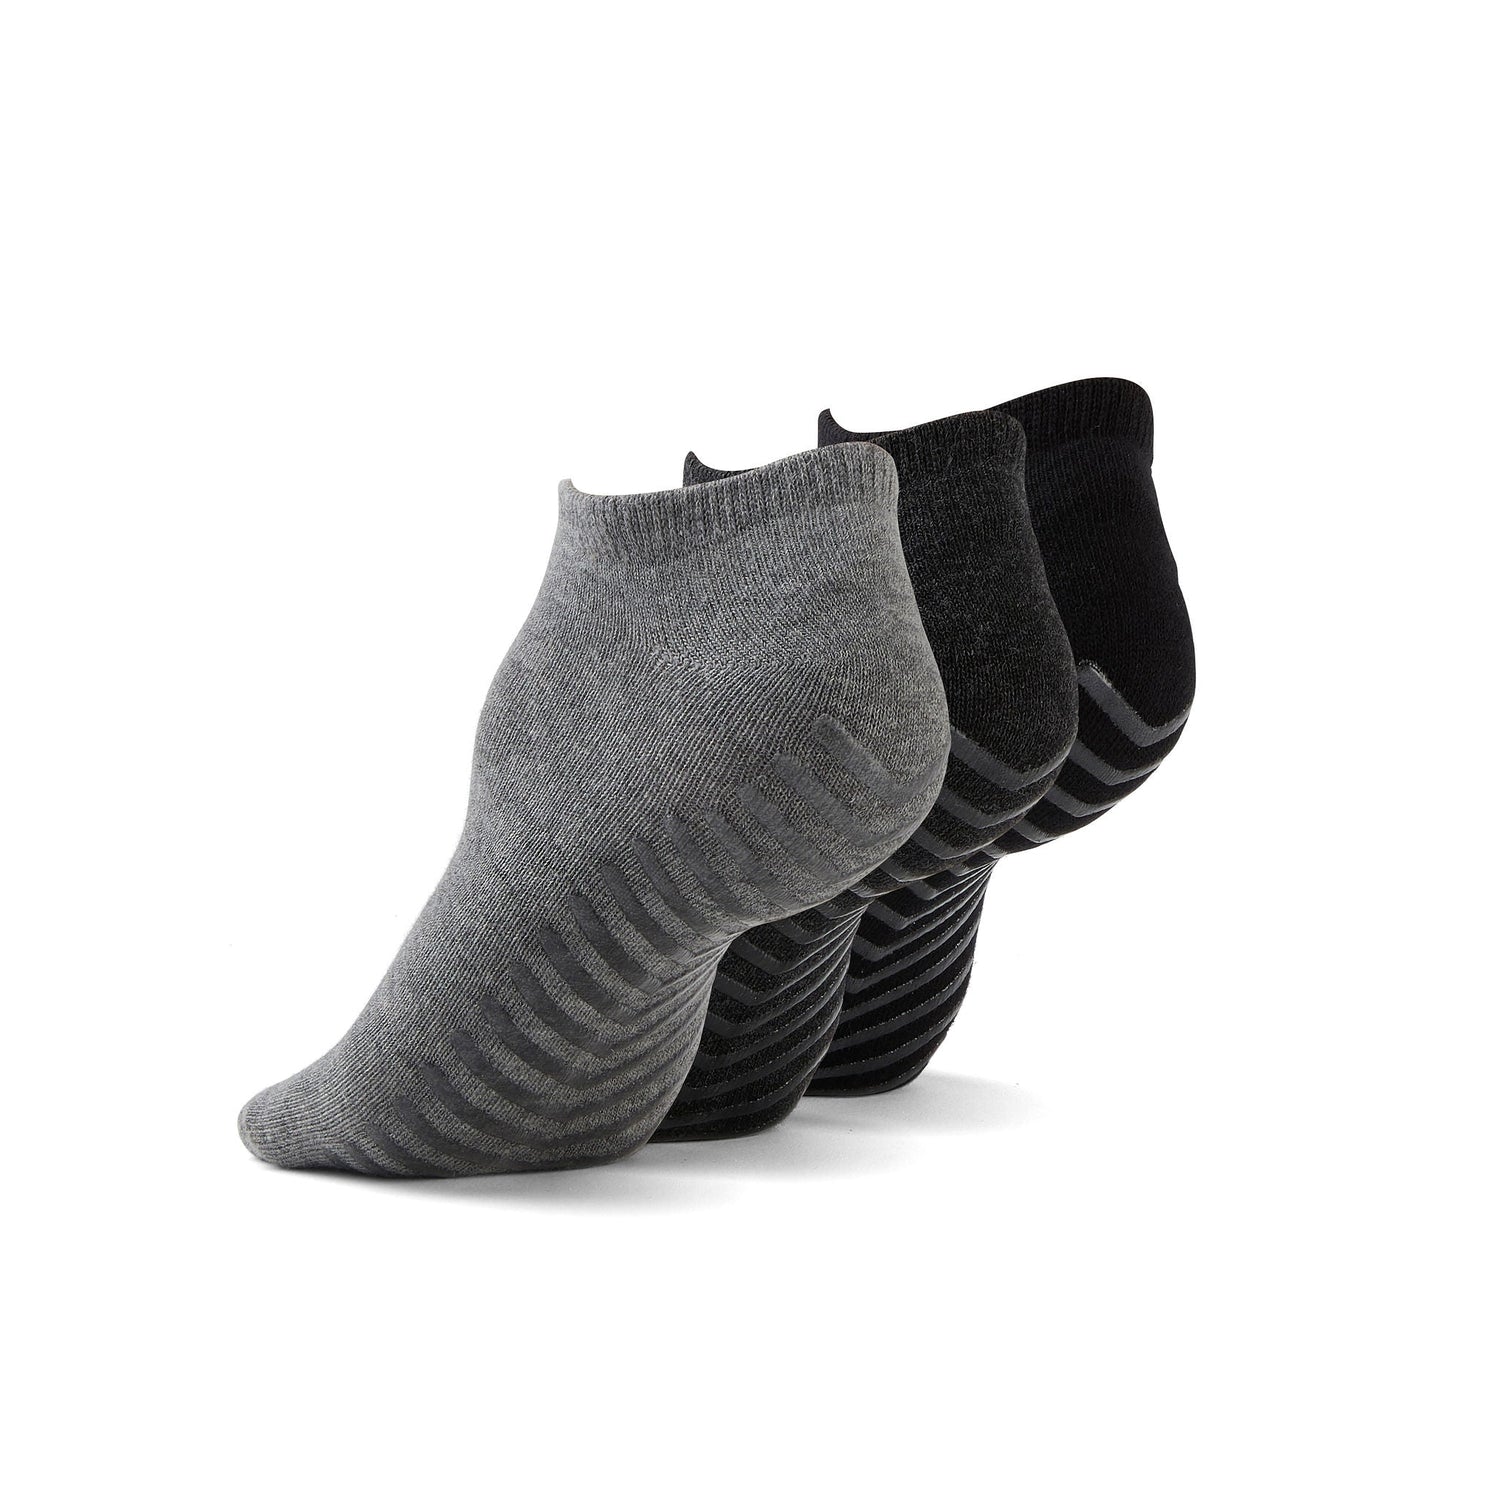 Light grey, dark grey, and black anti slip ankle socks.